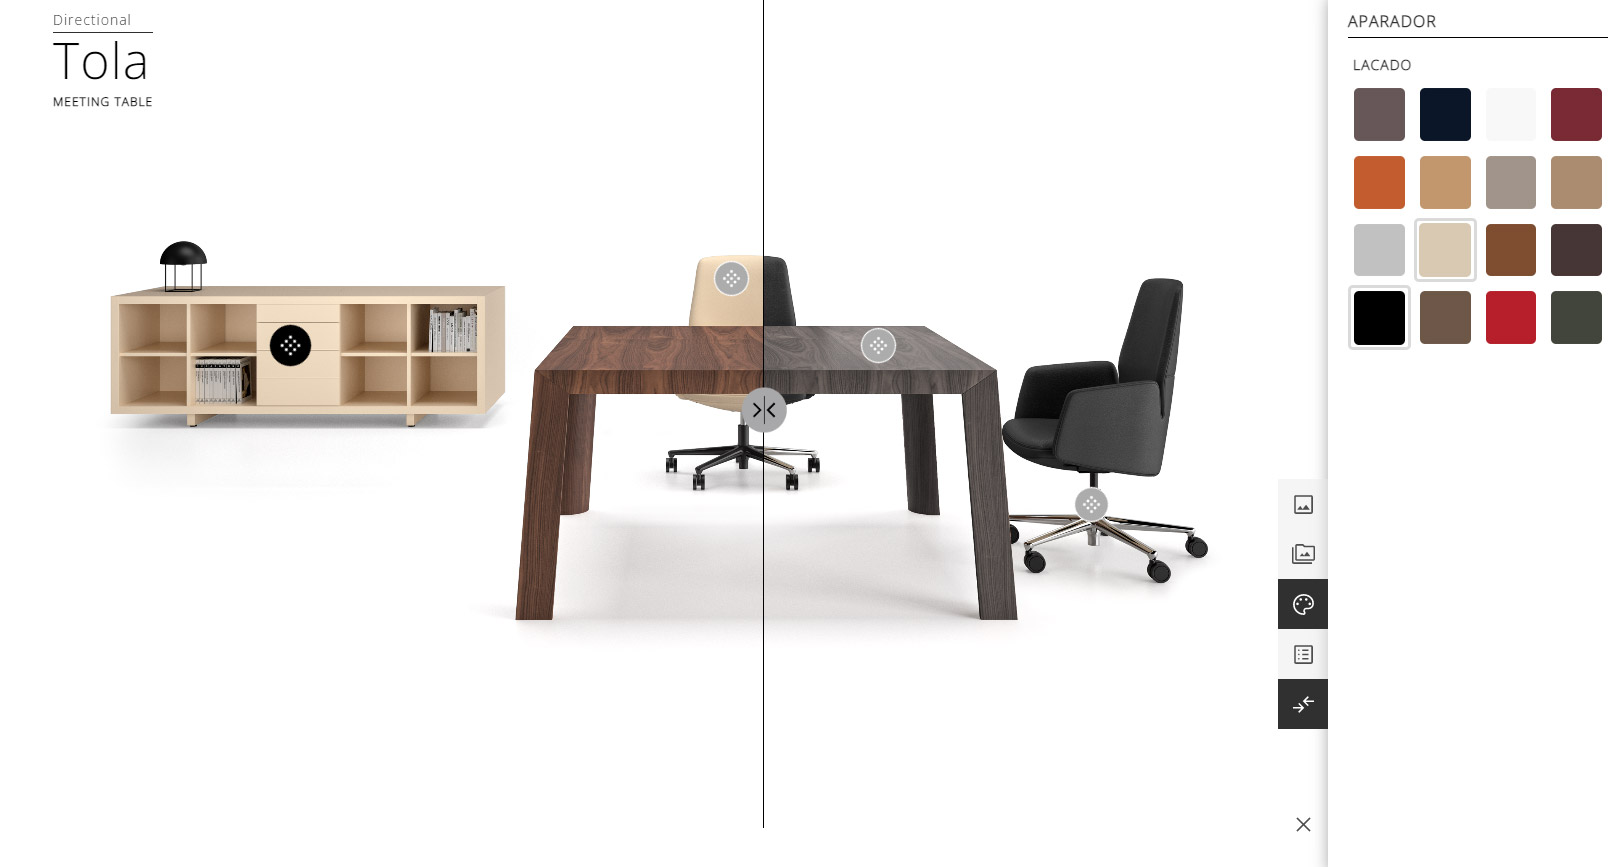 Configurador de mobiliario de oficina - Comparador